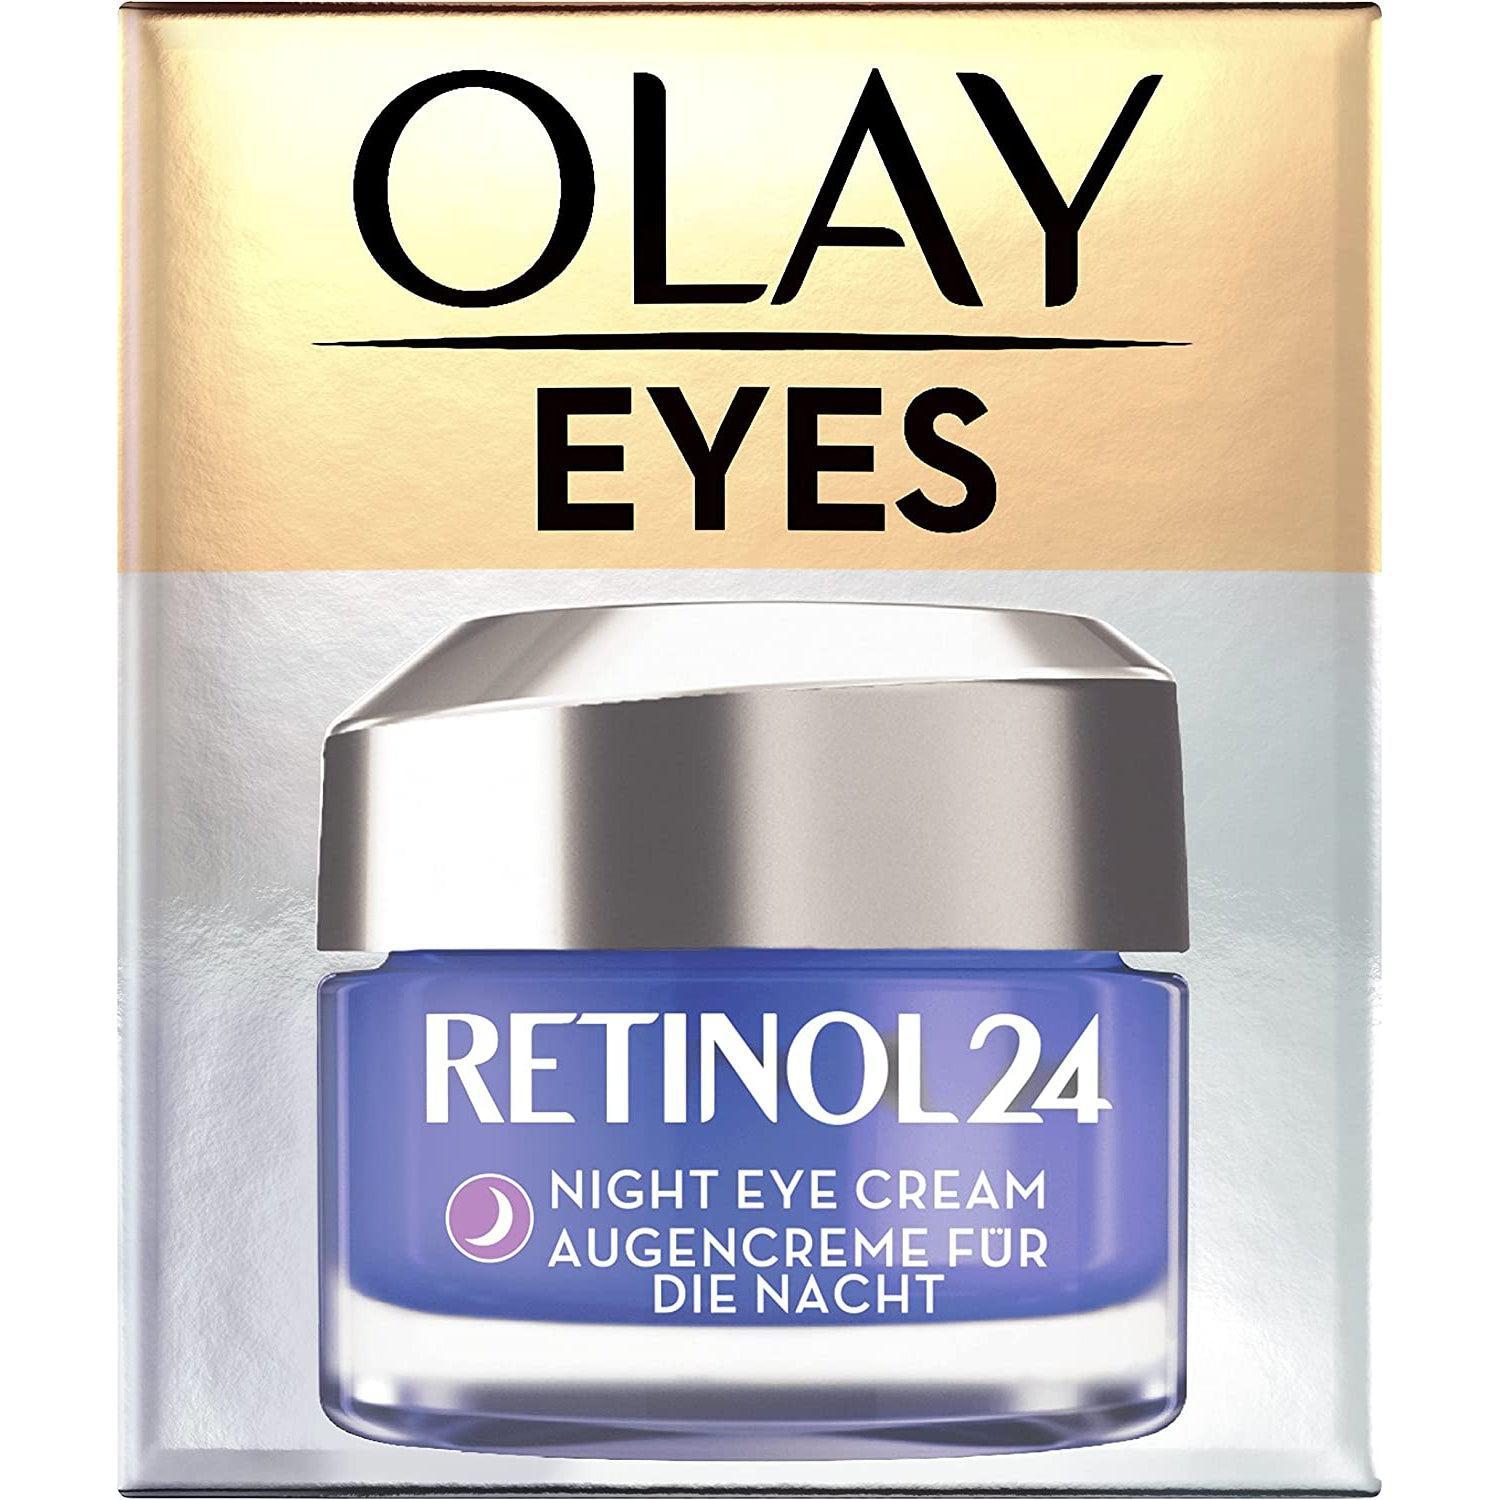 Olay Eyes Retinol 24 Eye Cream, 15 ml - Healthxpress.ie